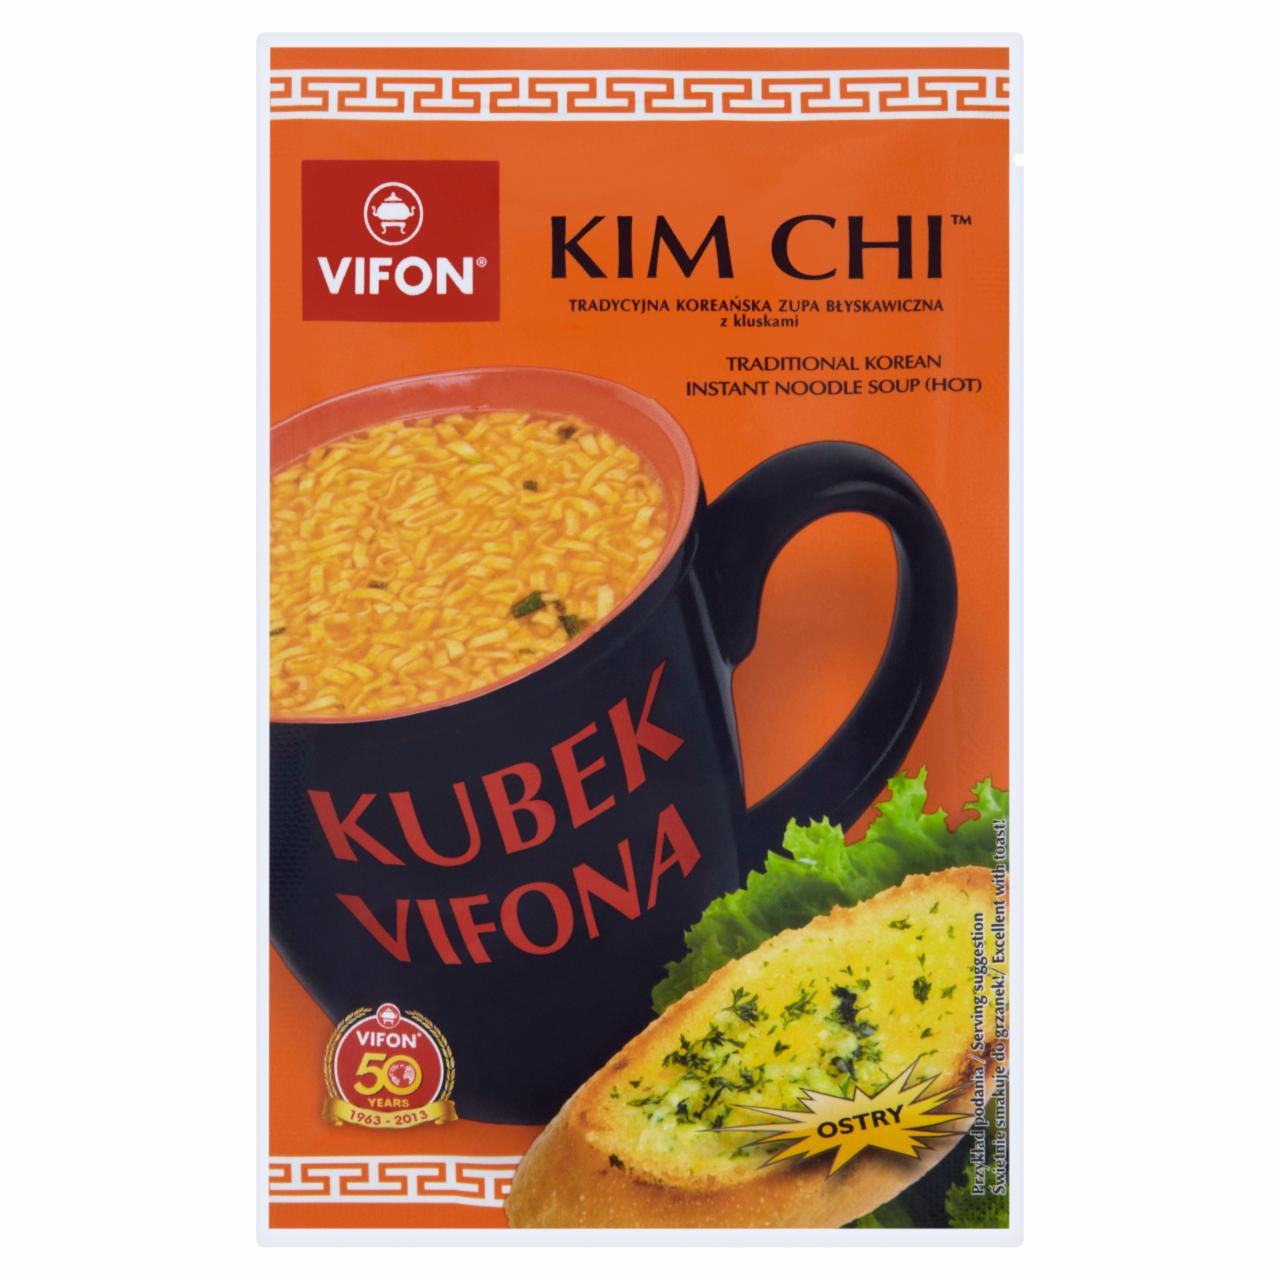 Zdjęcia - Vifon Kubek Vifona Kim Chi Tradycyjna koreańska zupa błyskawiczna z kluskami ostra 25 g